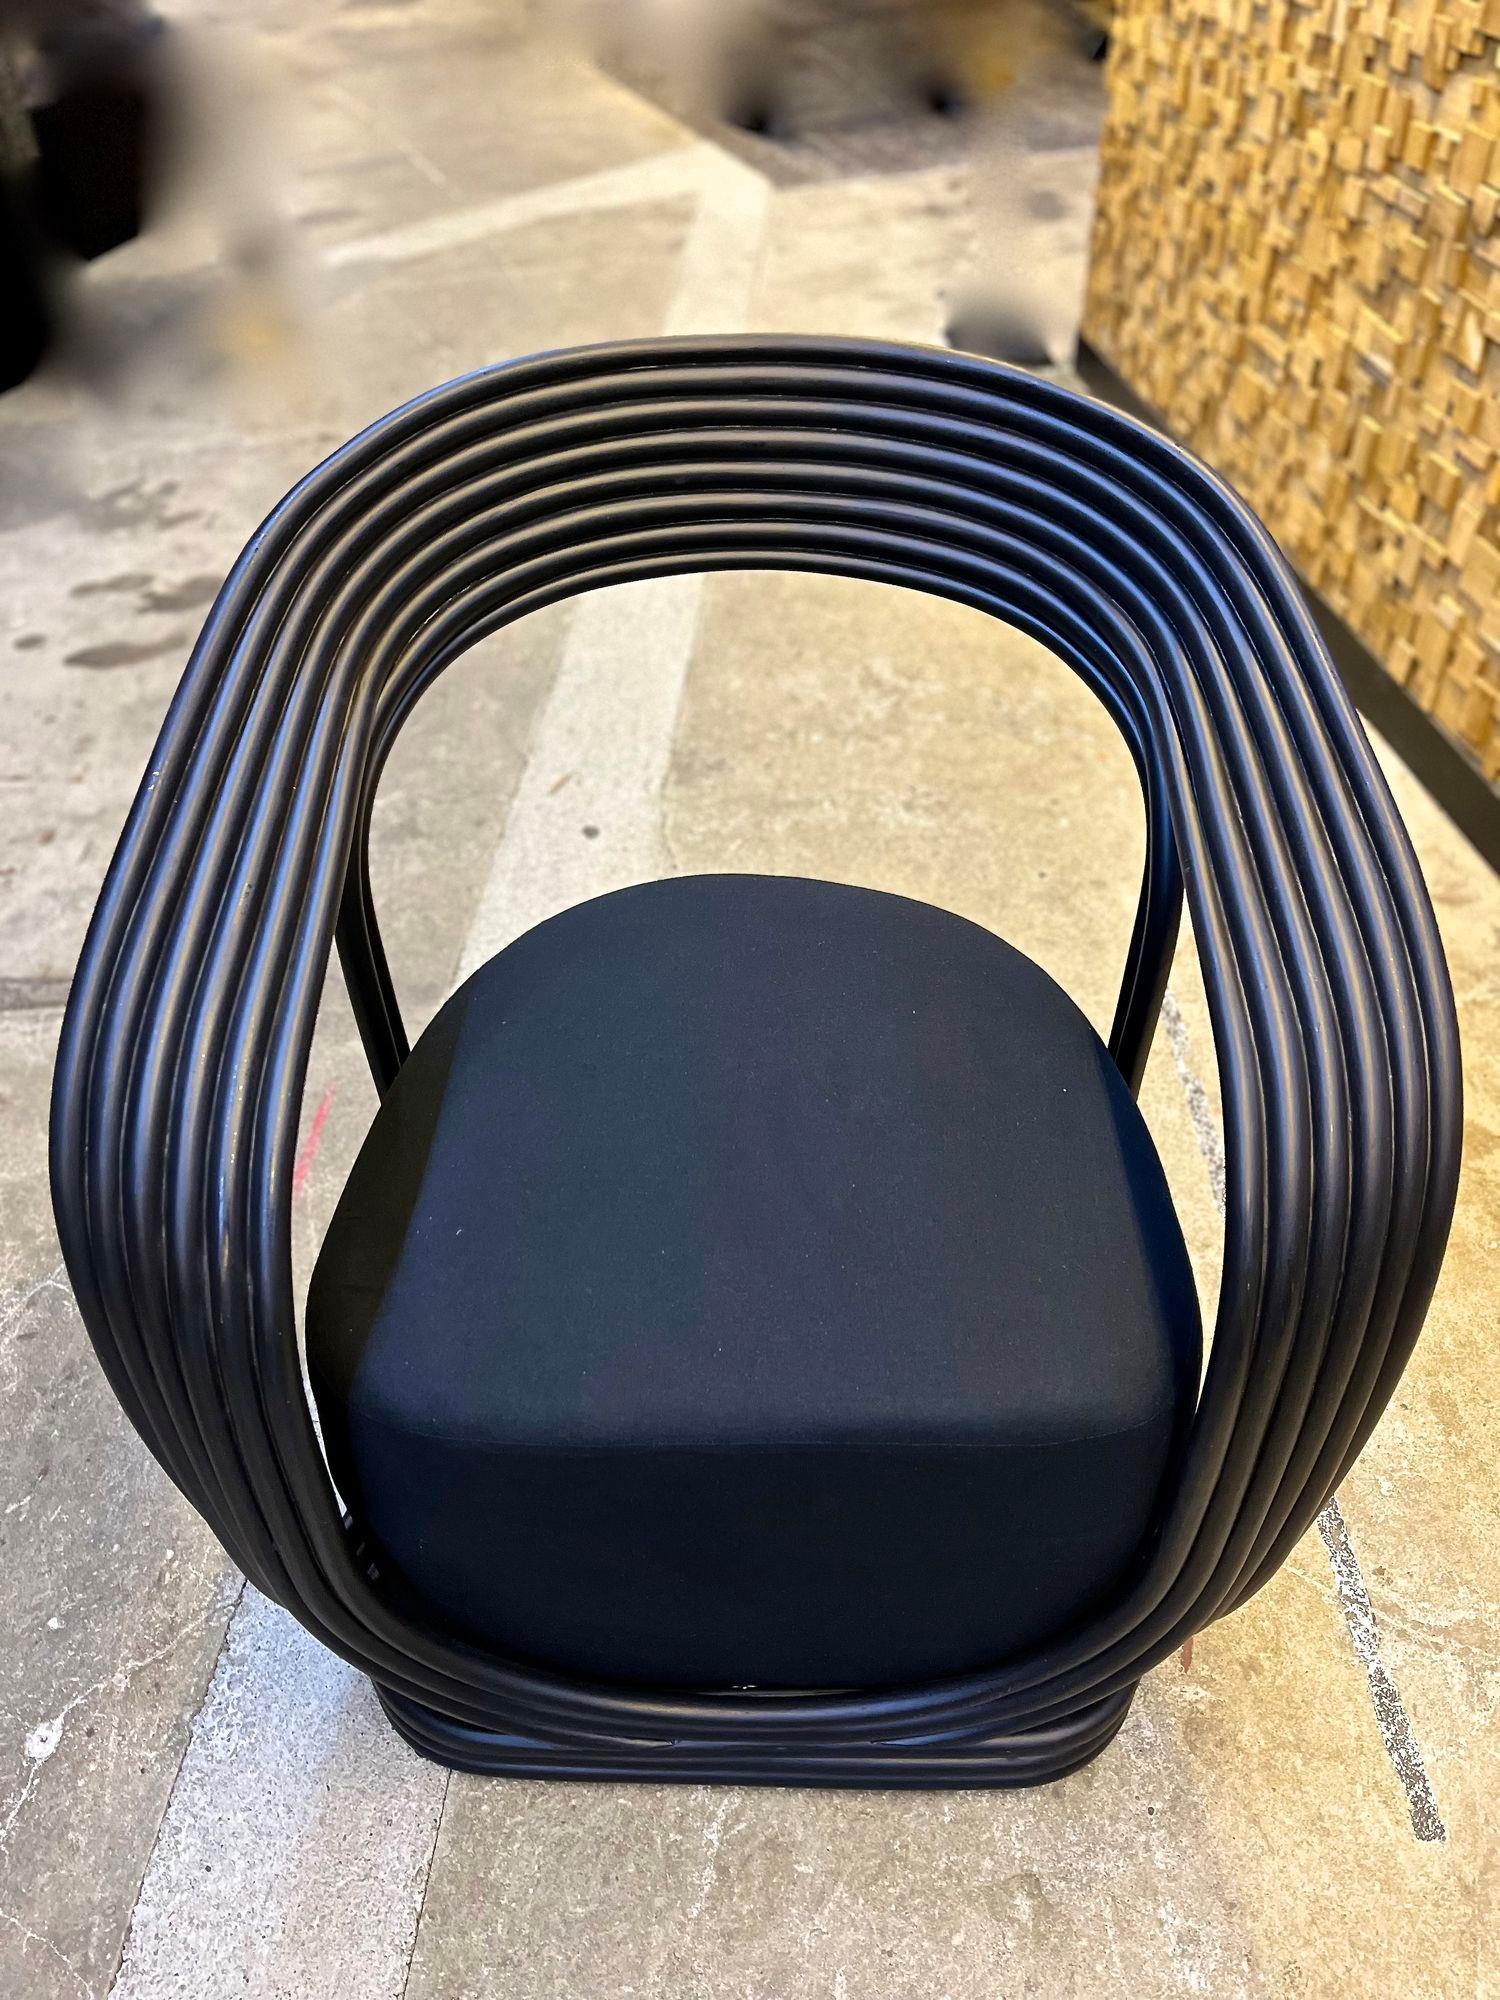 Zeitgenössischer, stilvoller schwarzer Sessel oder Loungesessel von einem indonesischen Künstler. Dieser unglaublich designte, moderne Sessel besticht durch seine formschönen, breiten Linien. Aufwändig aus gebogenem Bambus gefertigt und schwarz